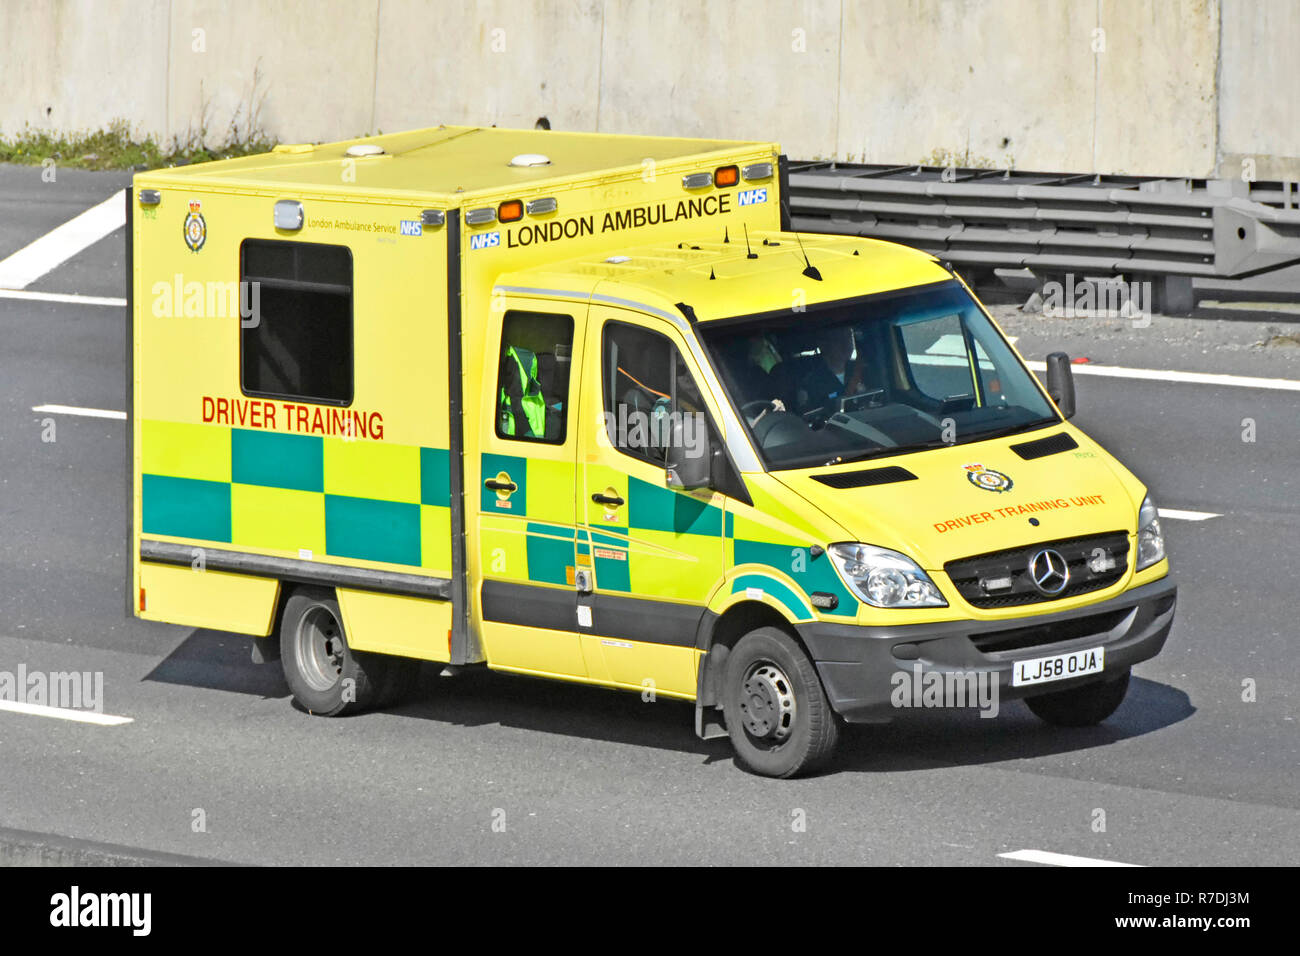 Londres modificado NHS conductor de ambulancia, vehículo de instrucción y capacitación para la enseñanza práctica de aprendizaje en sesiones de conducción en autopista M25 Essex, Inglaterra Foto de stock